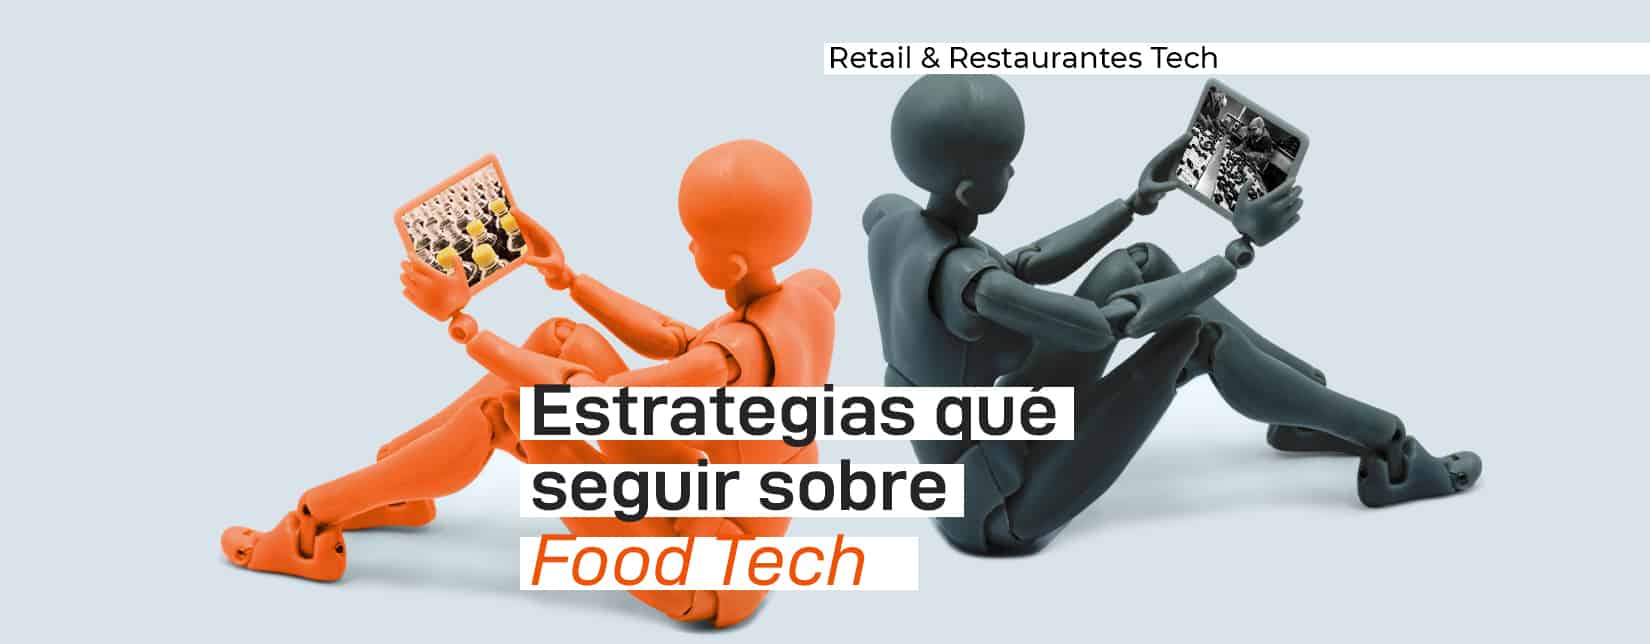 food tech en retail y restaurantes